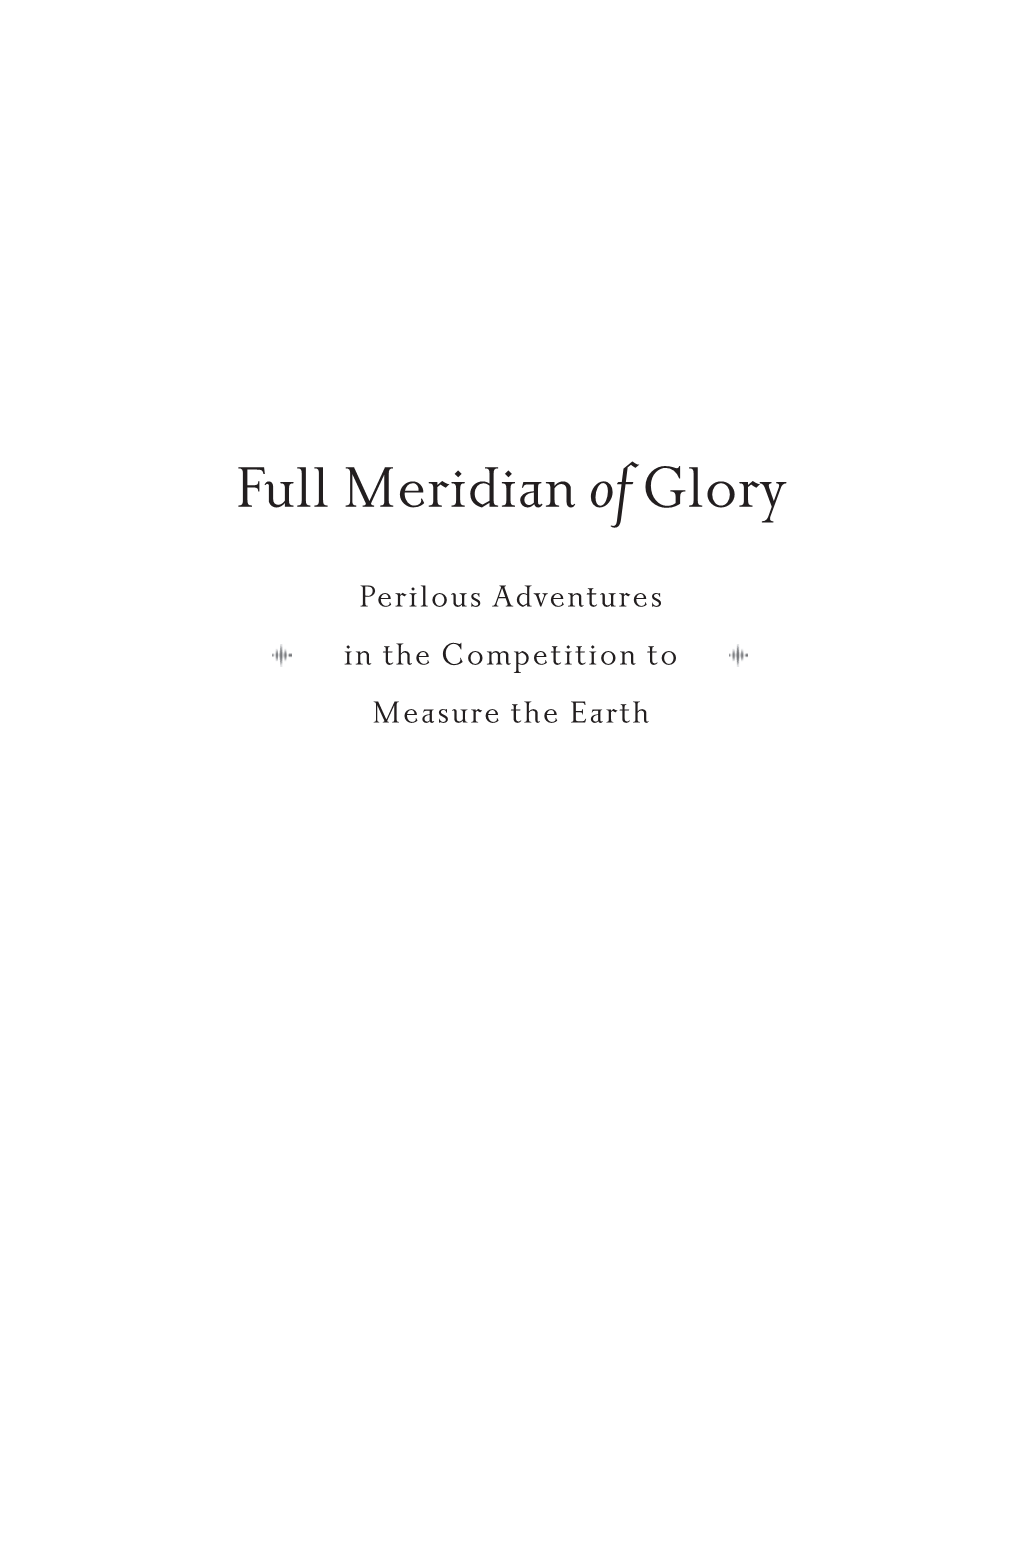 Full Meridian Ofglory